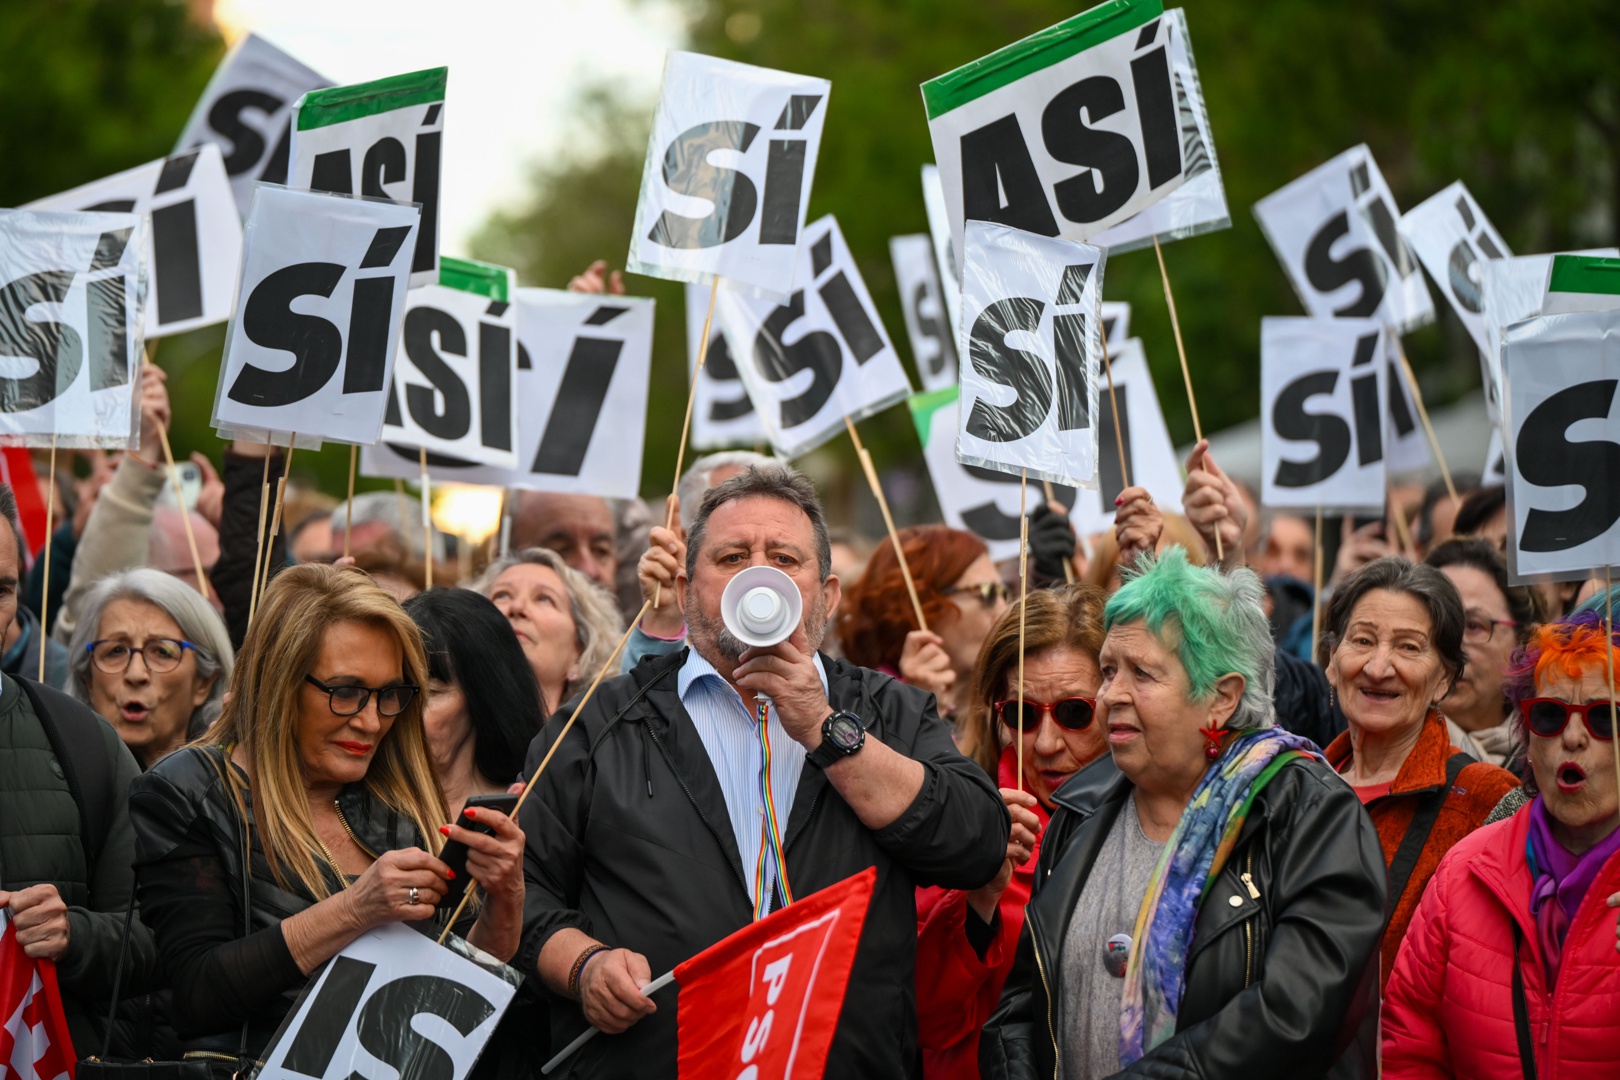 concentraciones en apoyo y en contra de sánchez frente a sede partido socialista en madrid